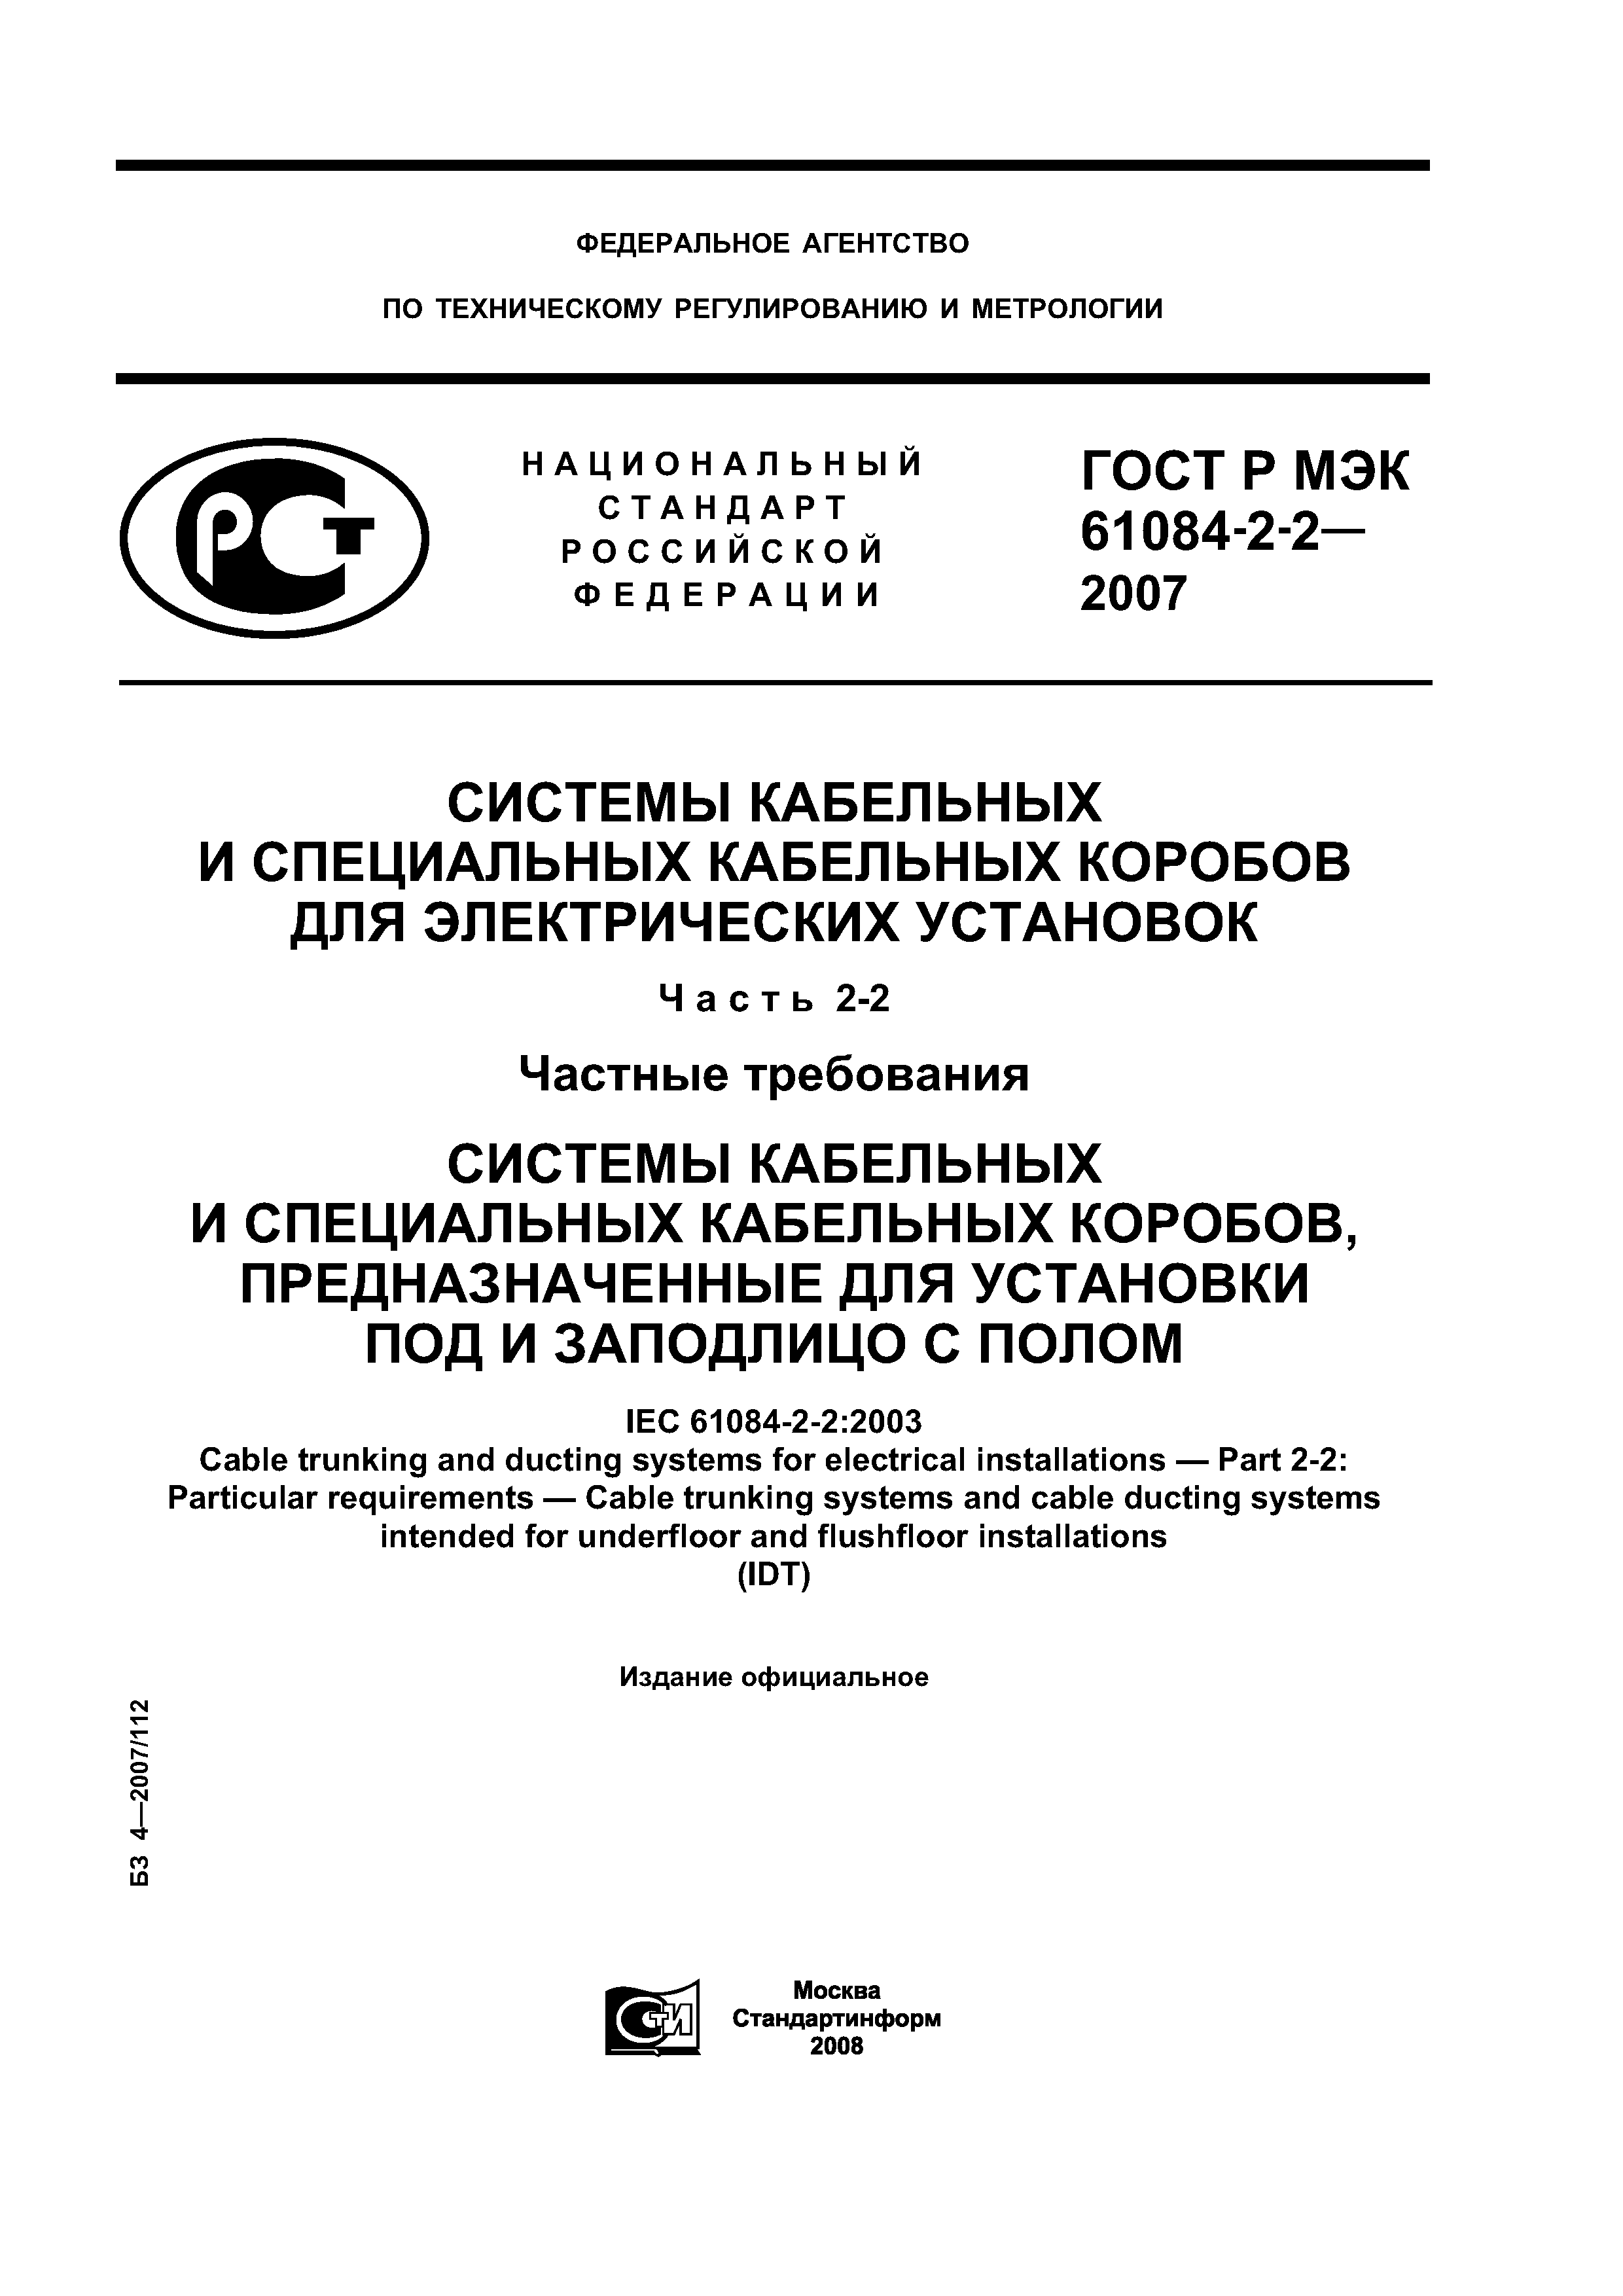 ГОСТ Р МЭК 61084-2-2-2007